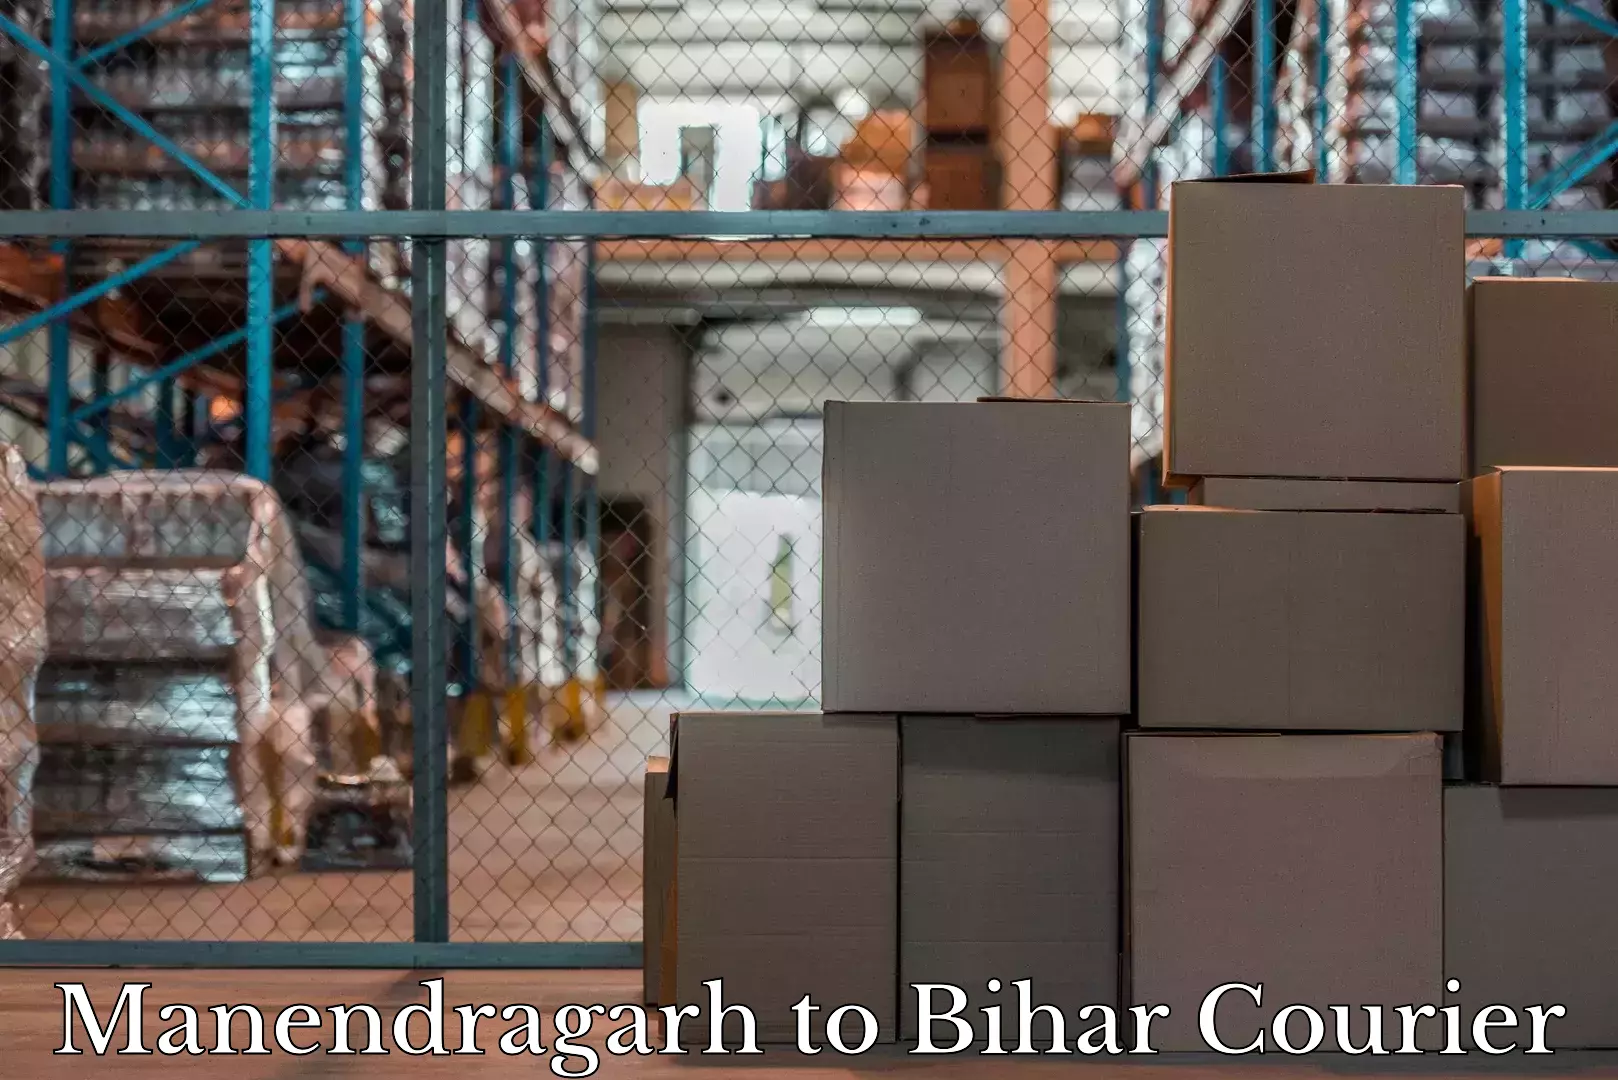 Baggage delivery technology Manendragarh to Mahnar Bazar